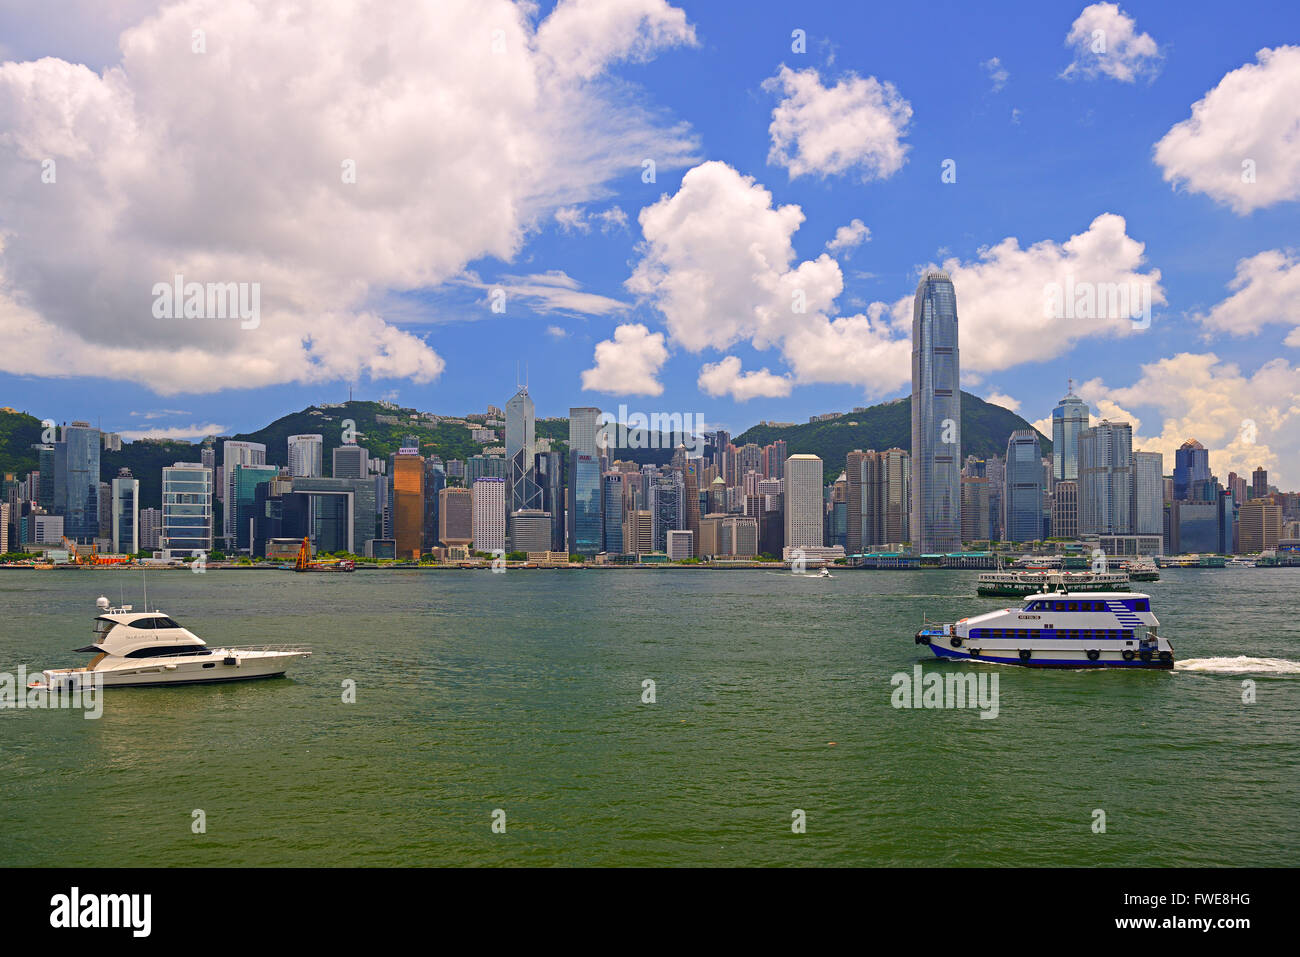 View from Kowloon to Hongkong Island and Hongkong River, Bank of China and IFC2 Tower, Hongkong, China Stock Photo